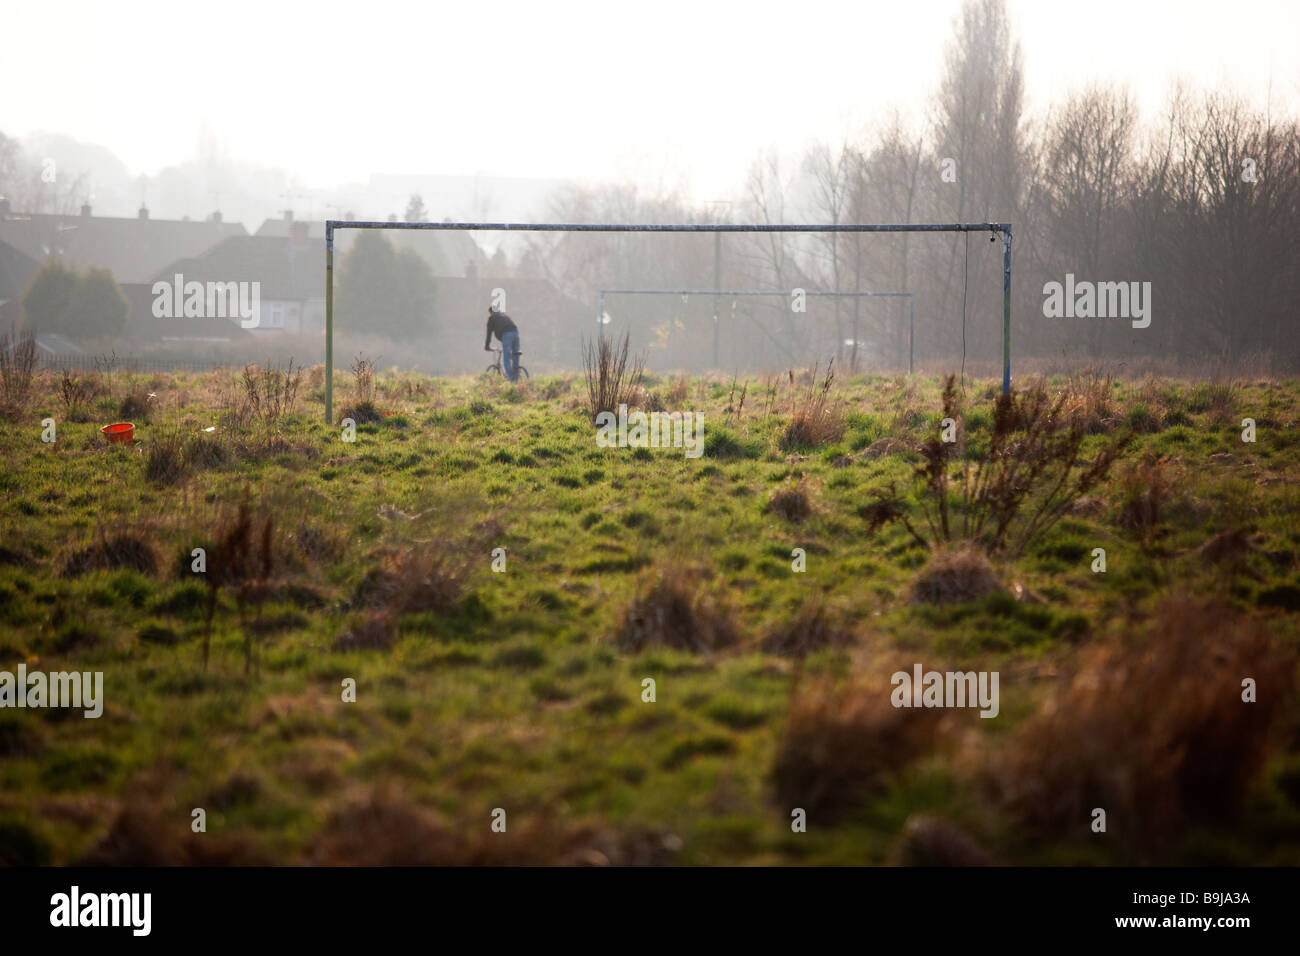 Un campo de fútbol, ahora cubiertas de maleza y abandonado, en las afueras de la ciudad de Coventry, Reino Unido Foto de stock